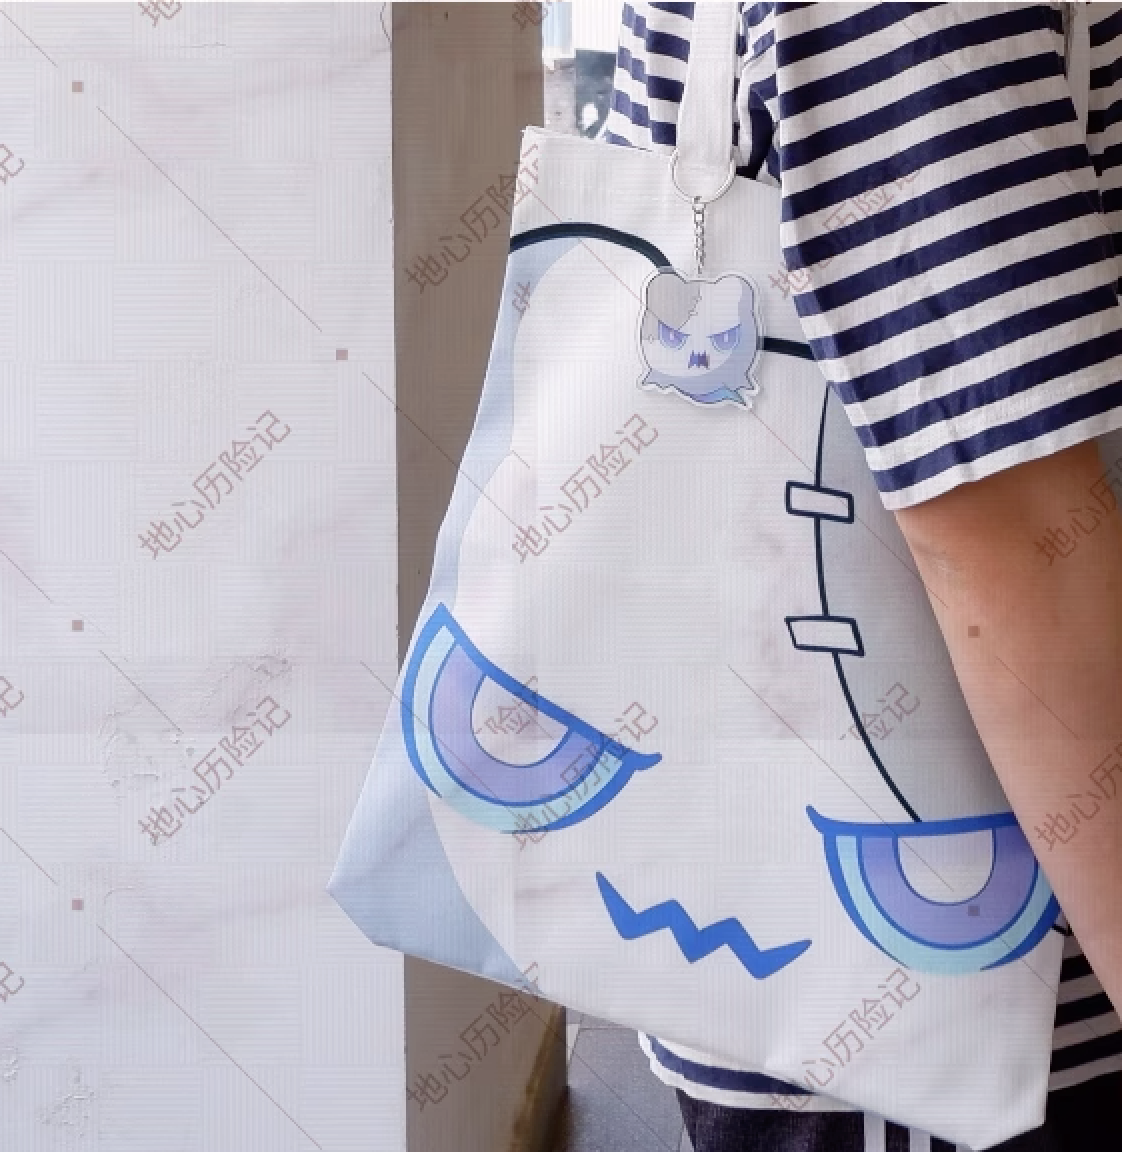 [Honkai Star-Rail] Canvas Bag